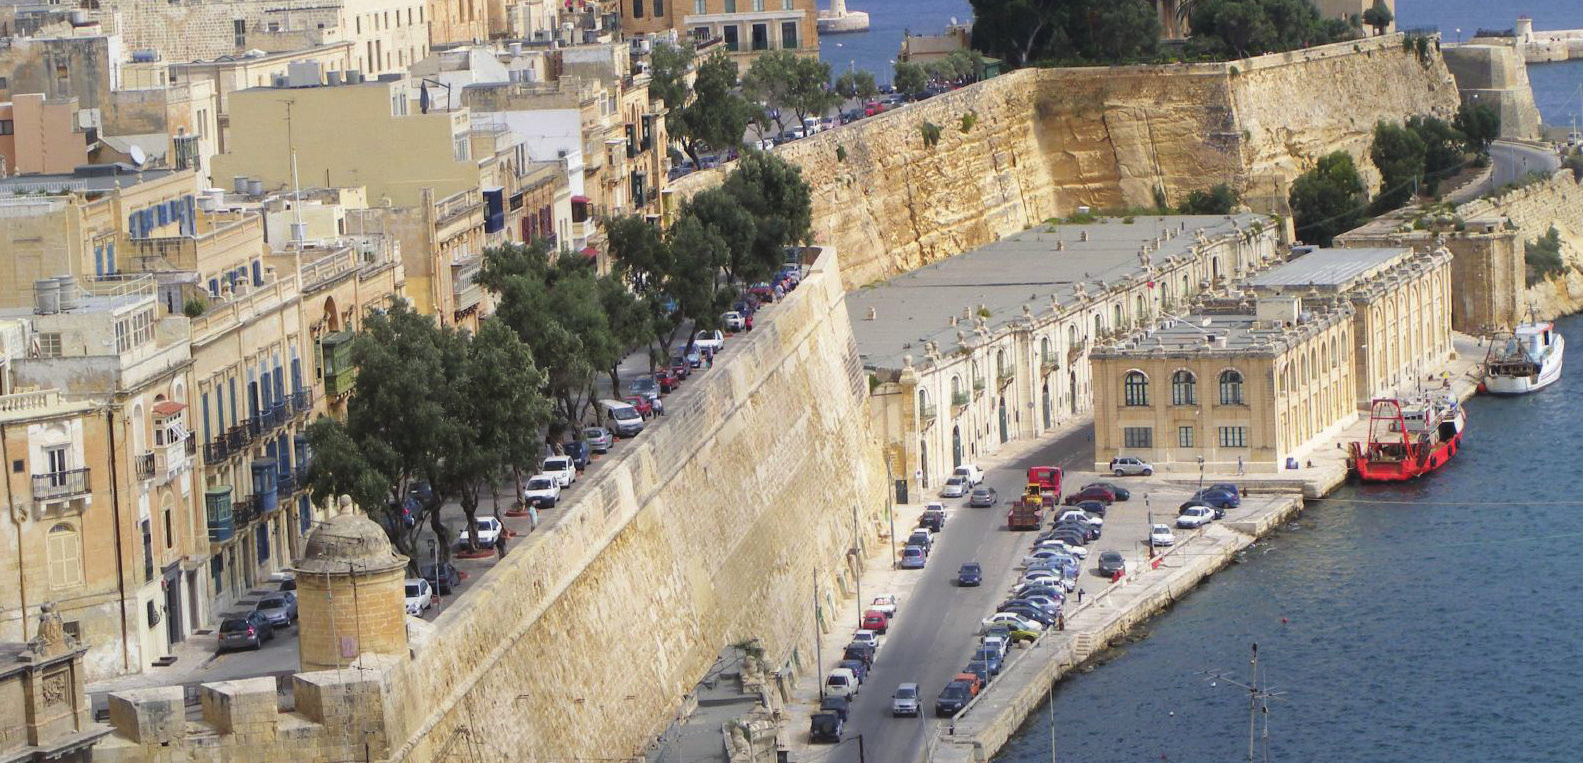 com resultados inconsistentes. O calcário ainda é o material de construção preferido em Malta, dando a arquitetura sua assinatura de coloração tom sépia.